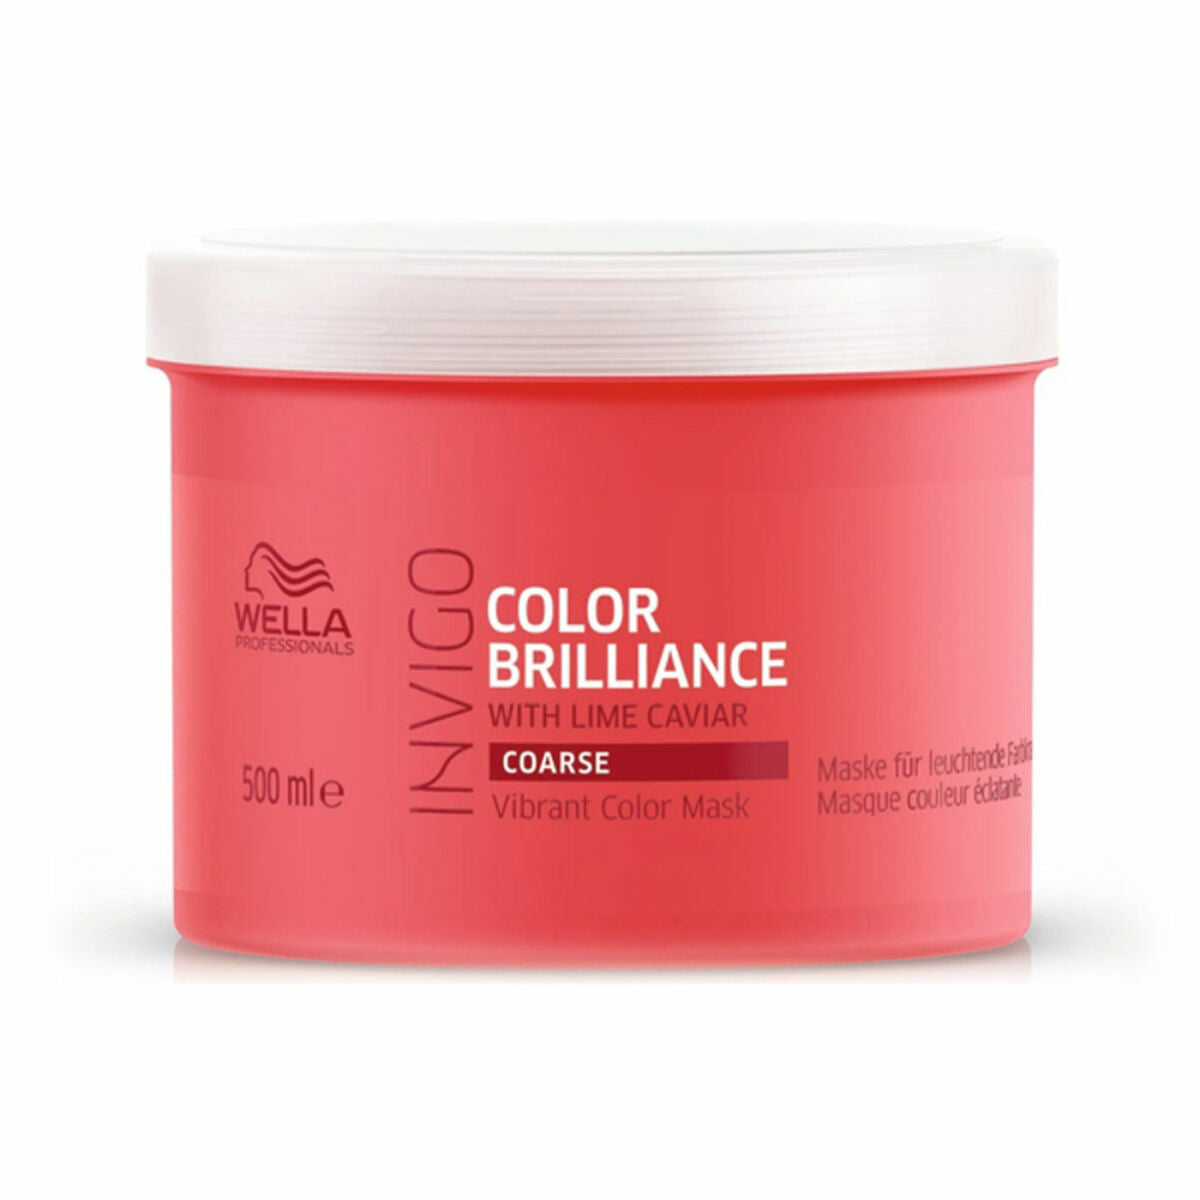 Fargebeskyttelseskrem Wella Brilliance (500 ml) 500 ml (1 enhet)